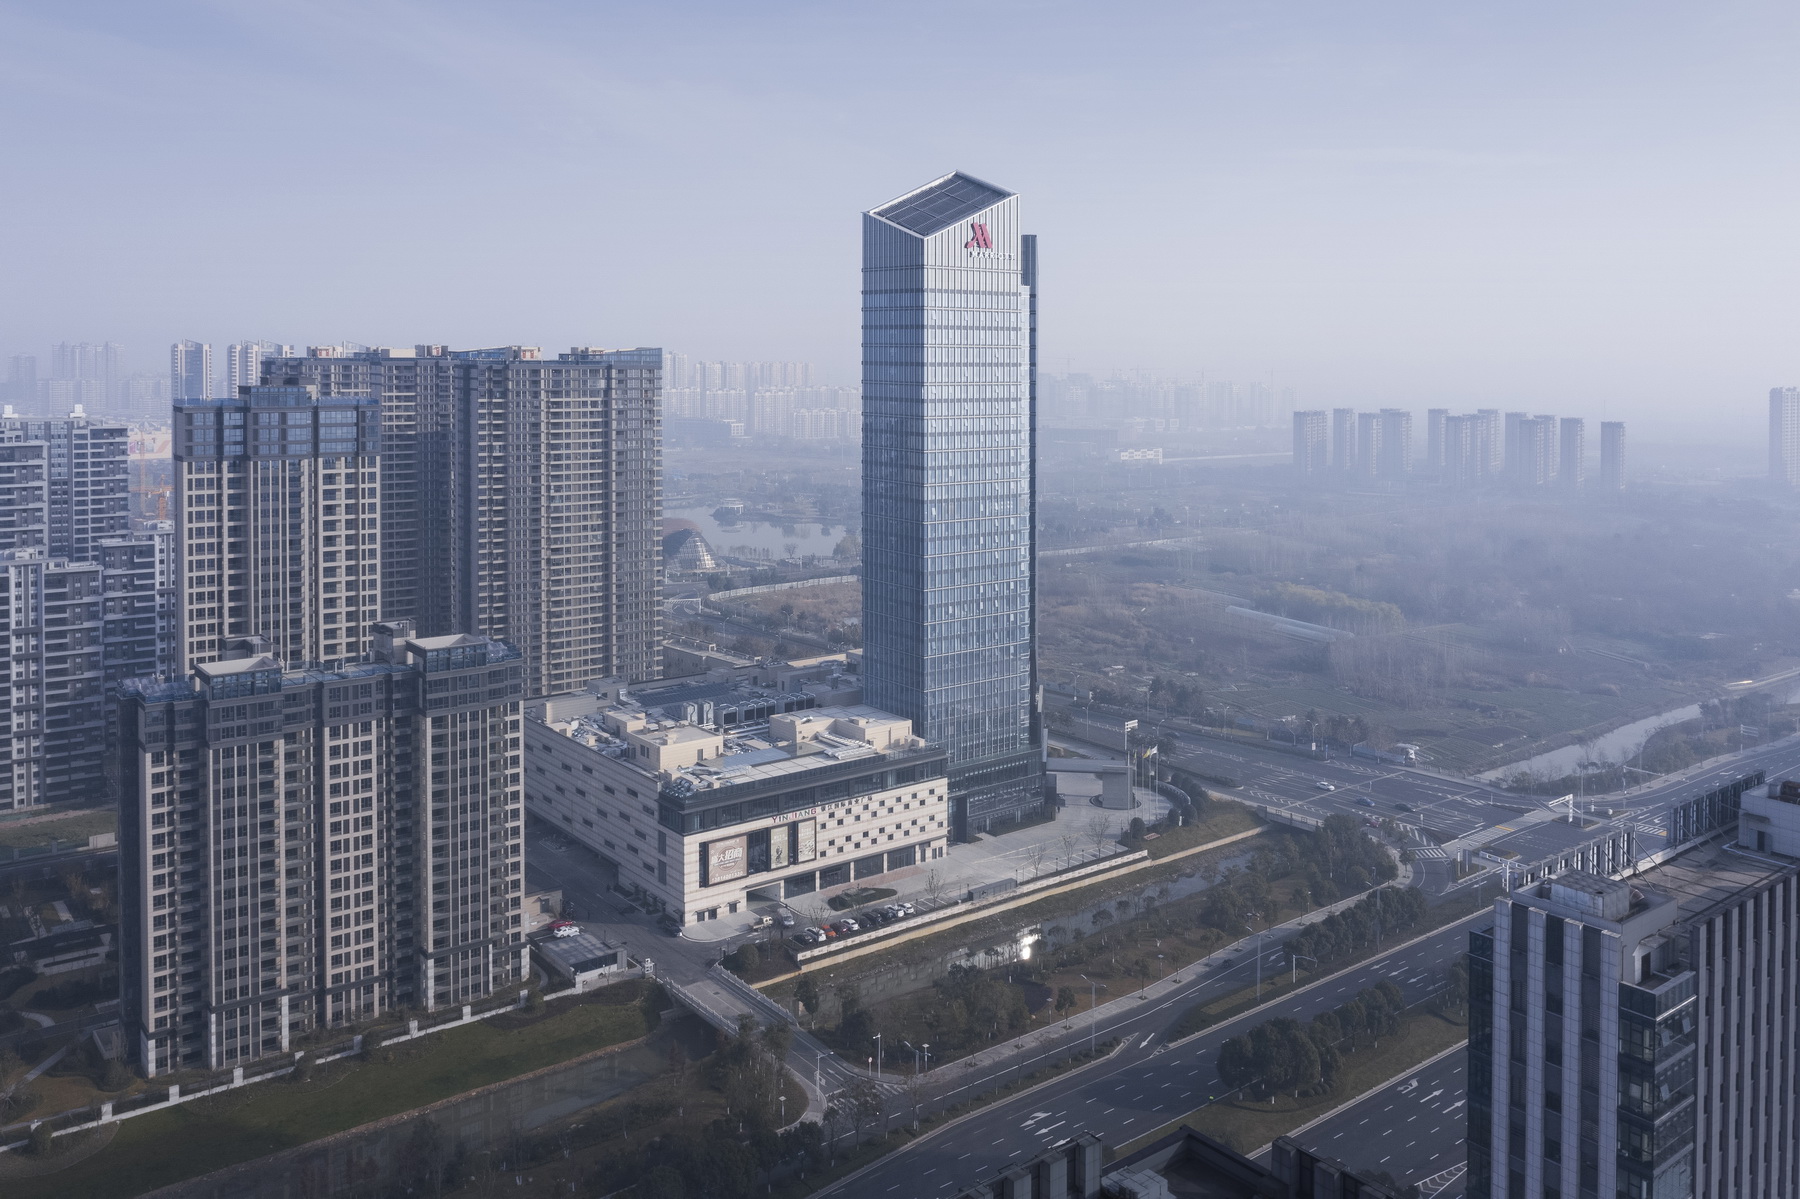 溧阳万豪酒店 建筑设计 / 上海三益建筑设计有限公司